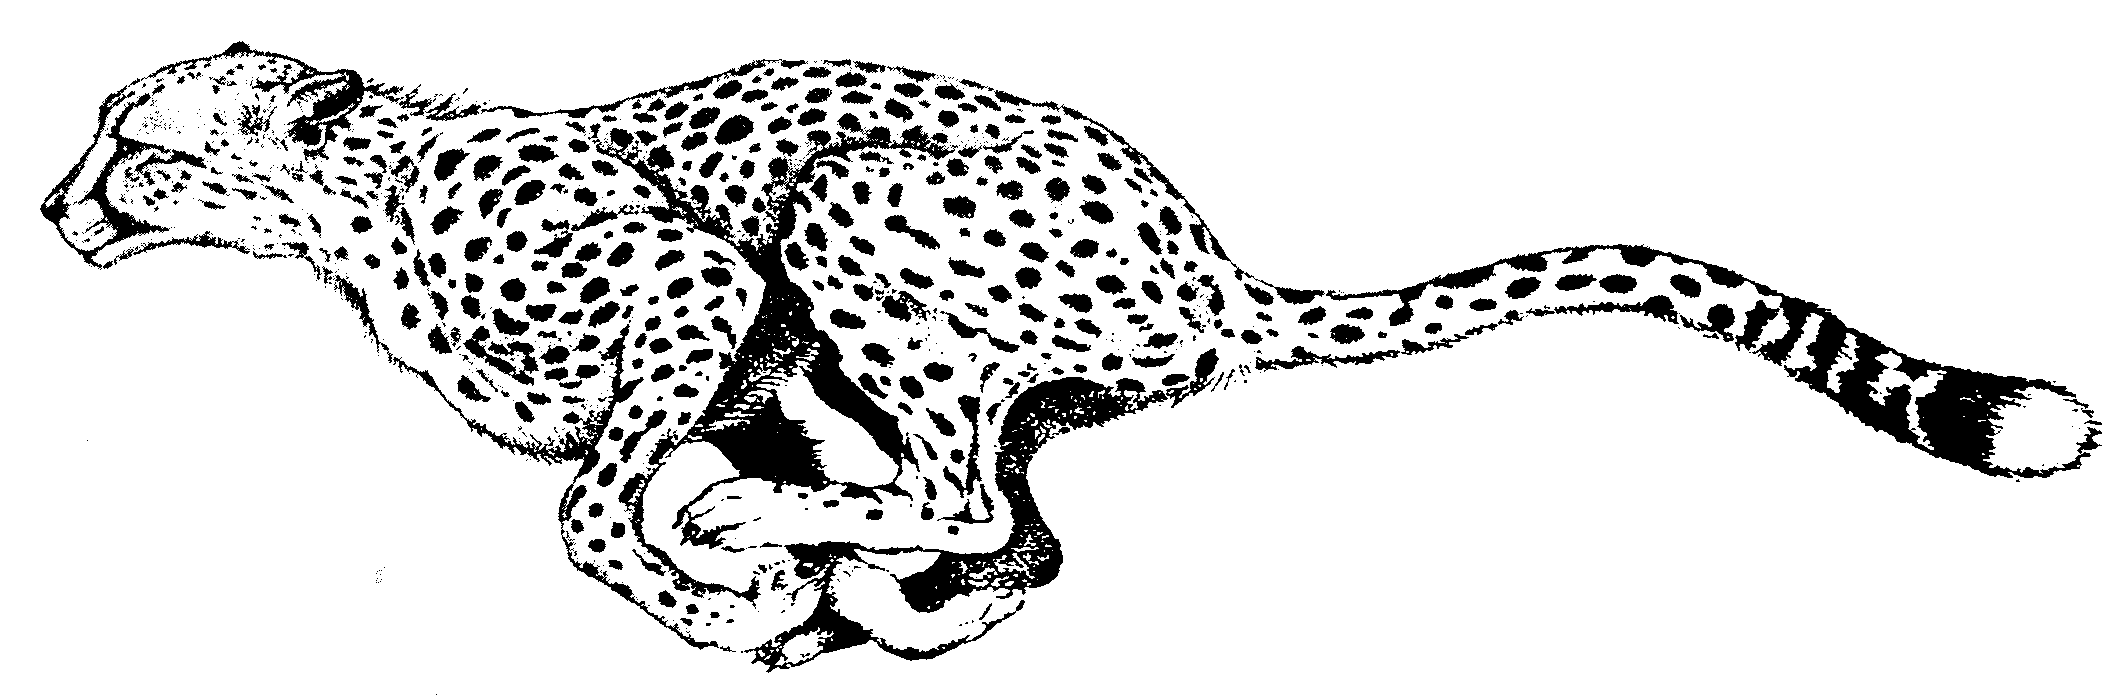 cheetah silhouette clip art